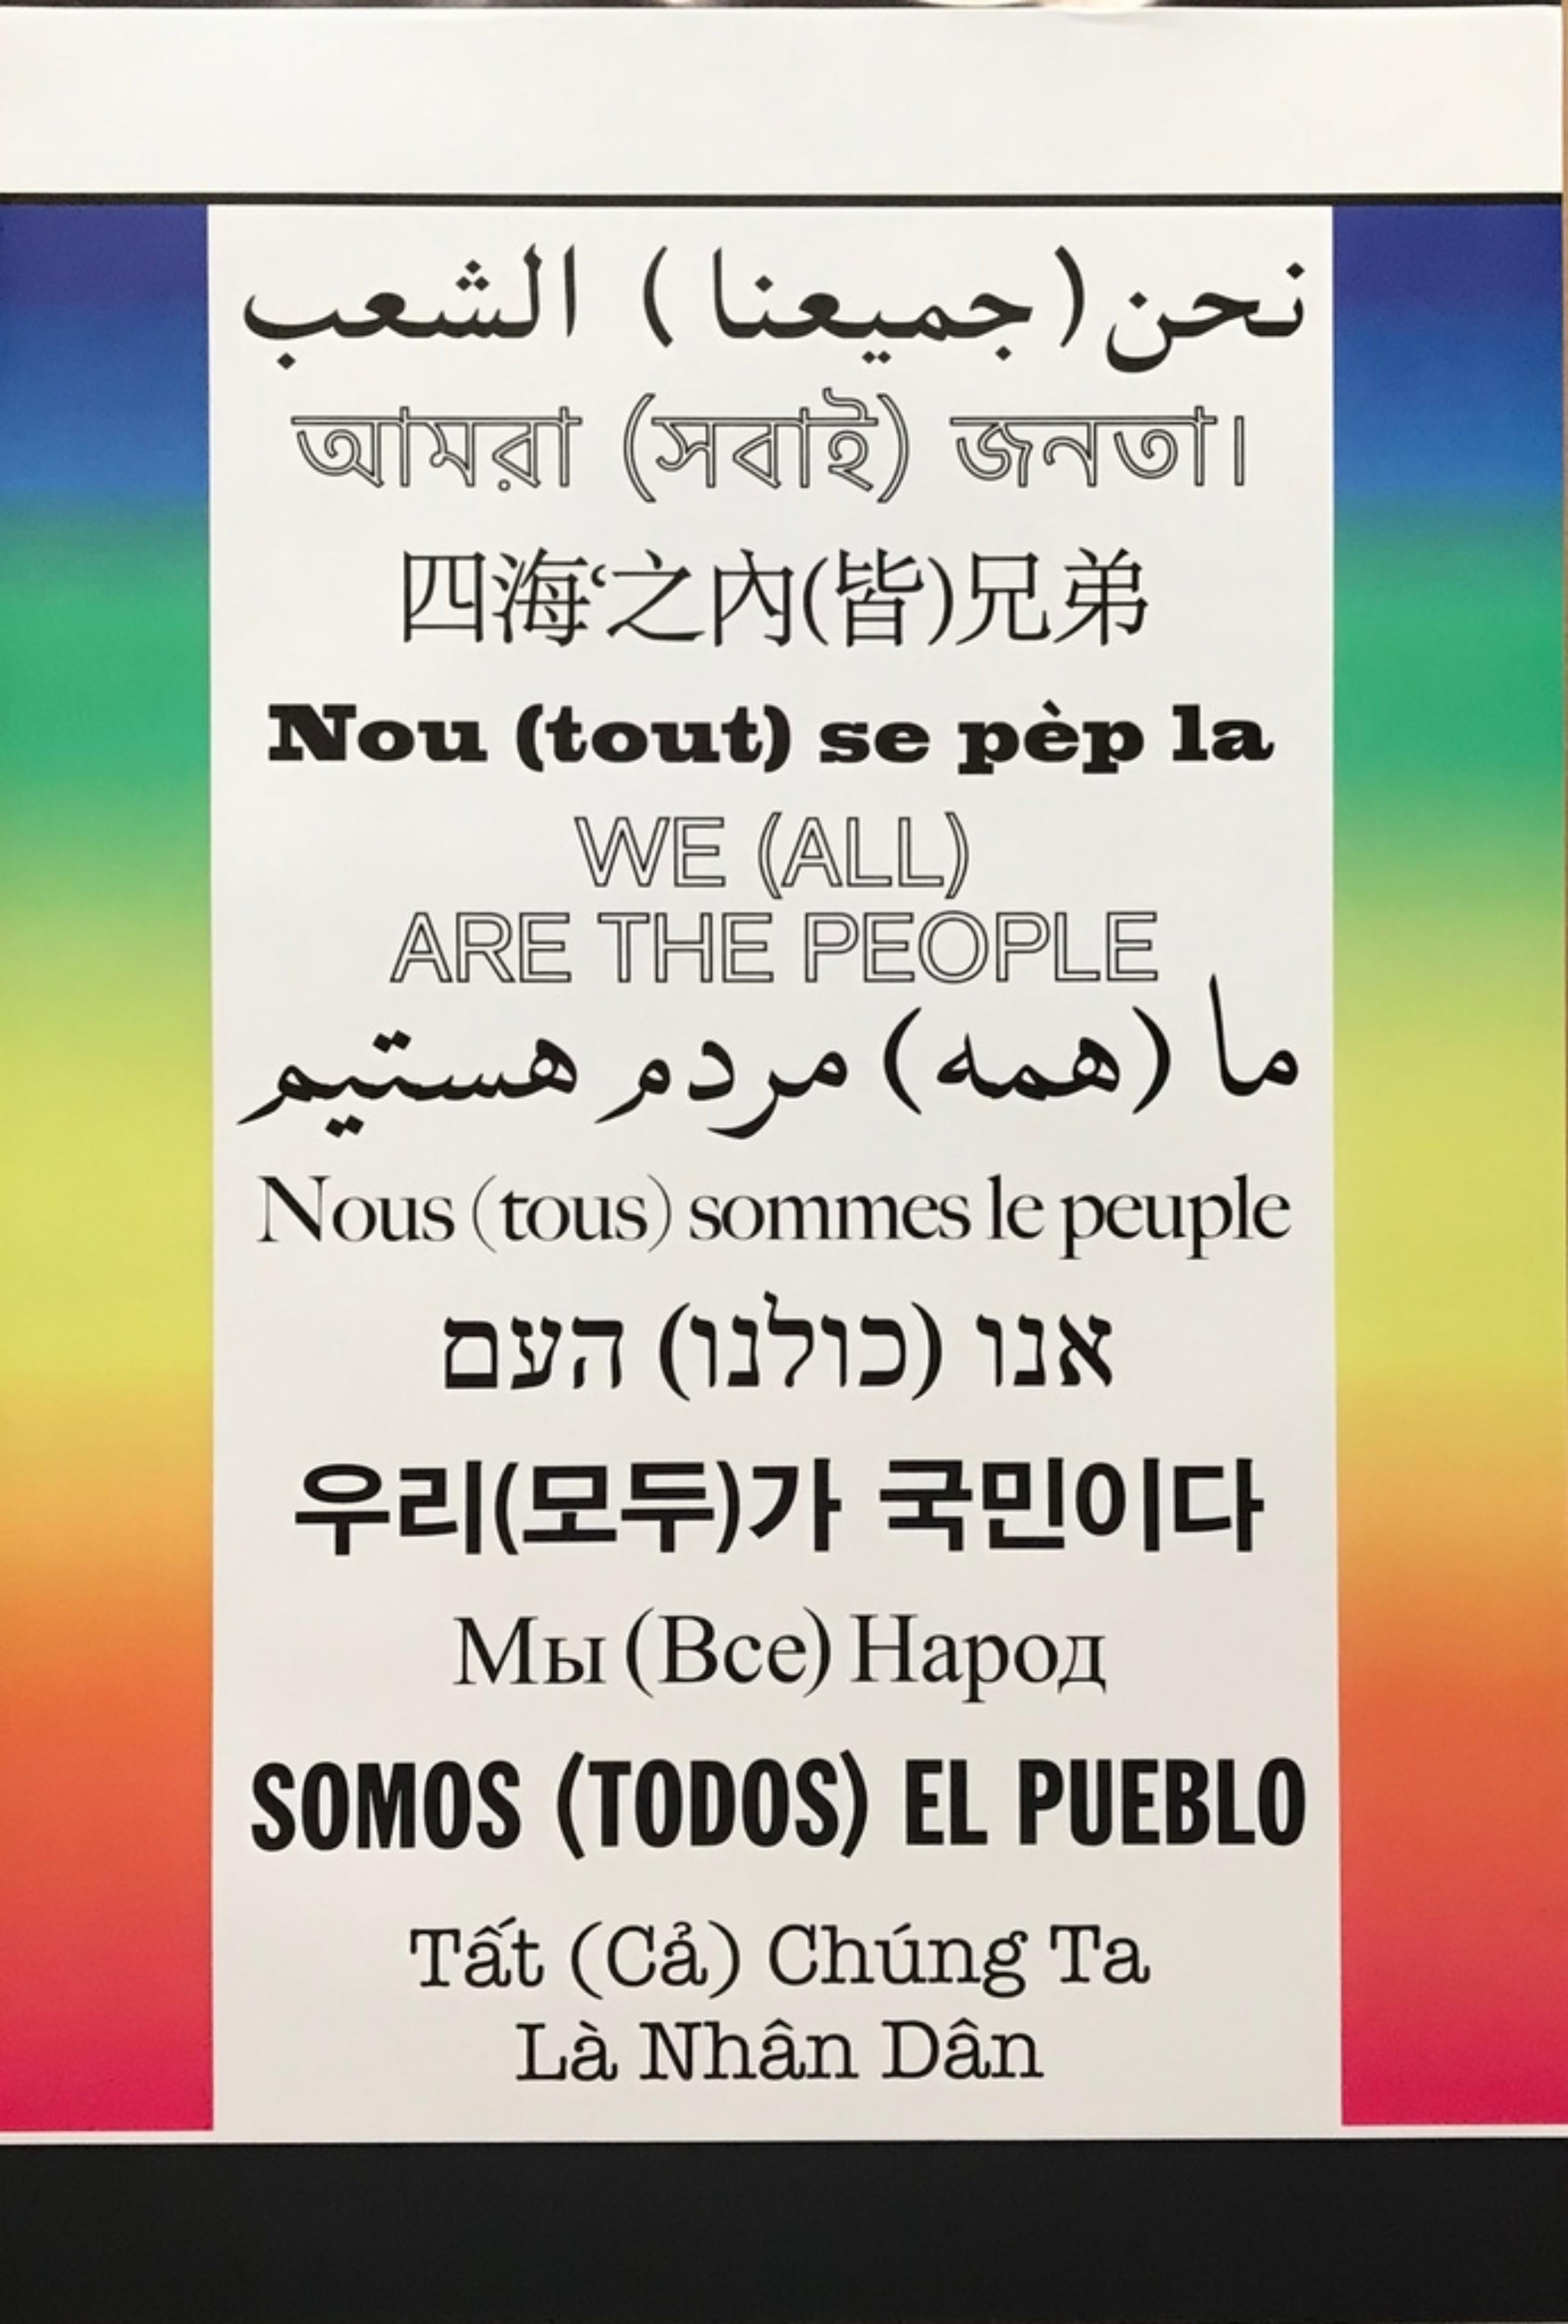 Hans Haacke  Abstract Print – Wir (Alle) Sind Das Volk - We (all) Are The People - Friedensplakat in vielen Sprachen